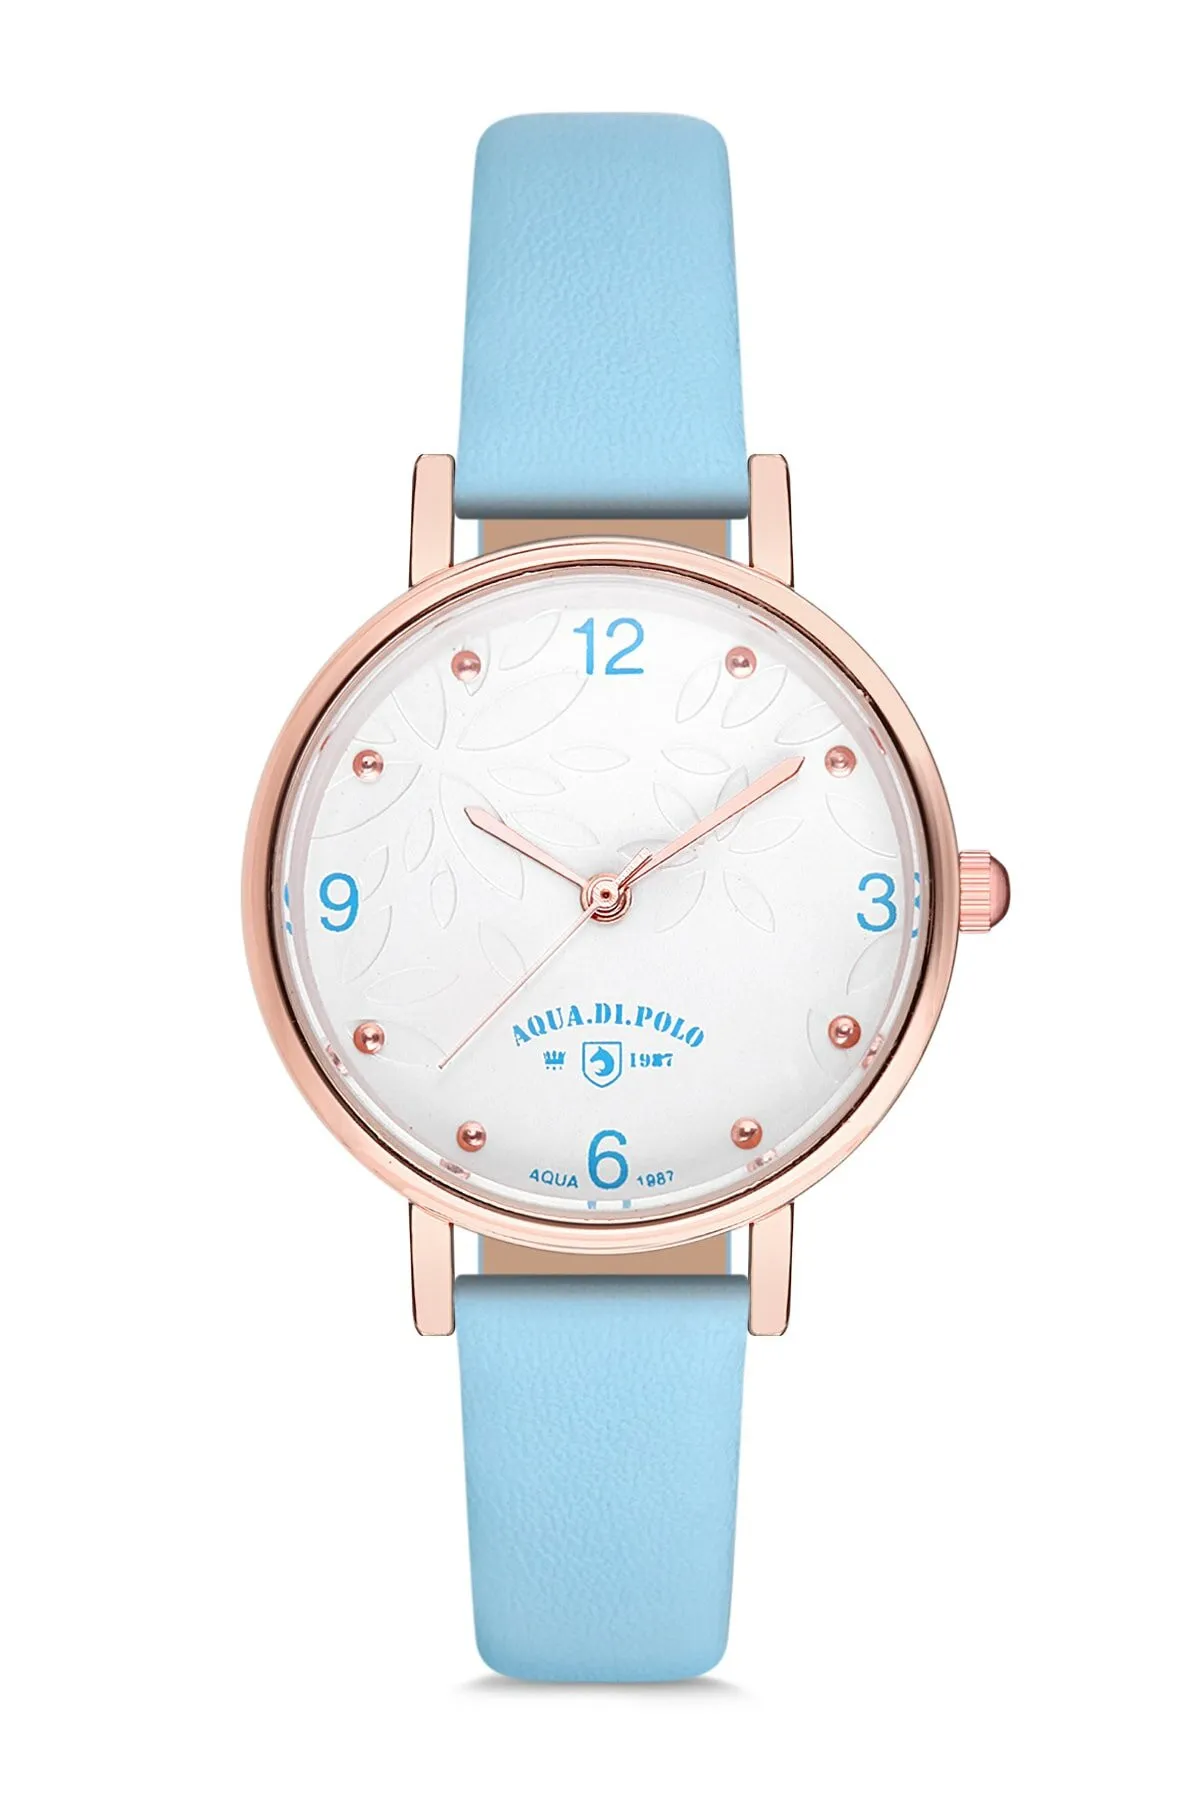 Кожаные женские наручные часы Di Polo apwa029803#1